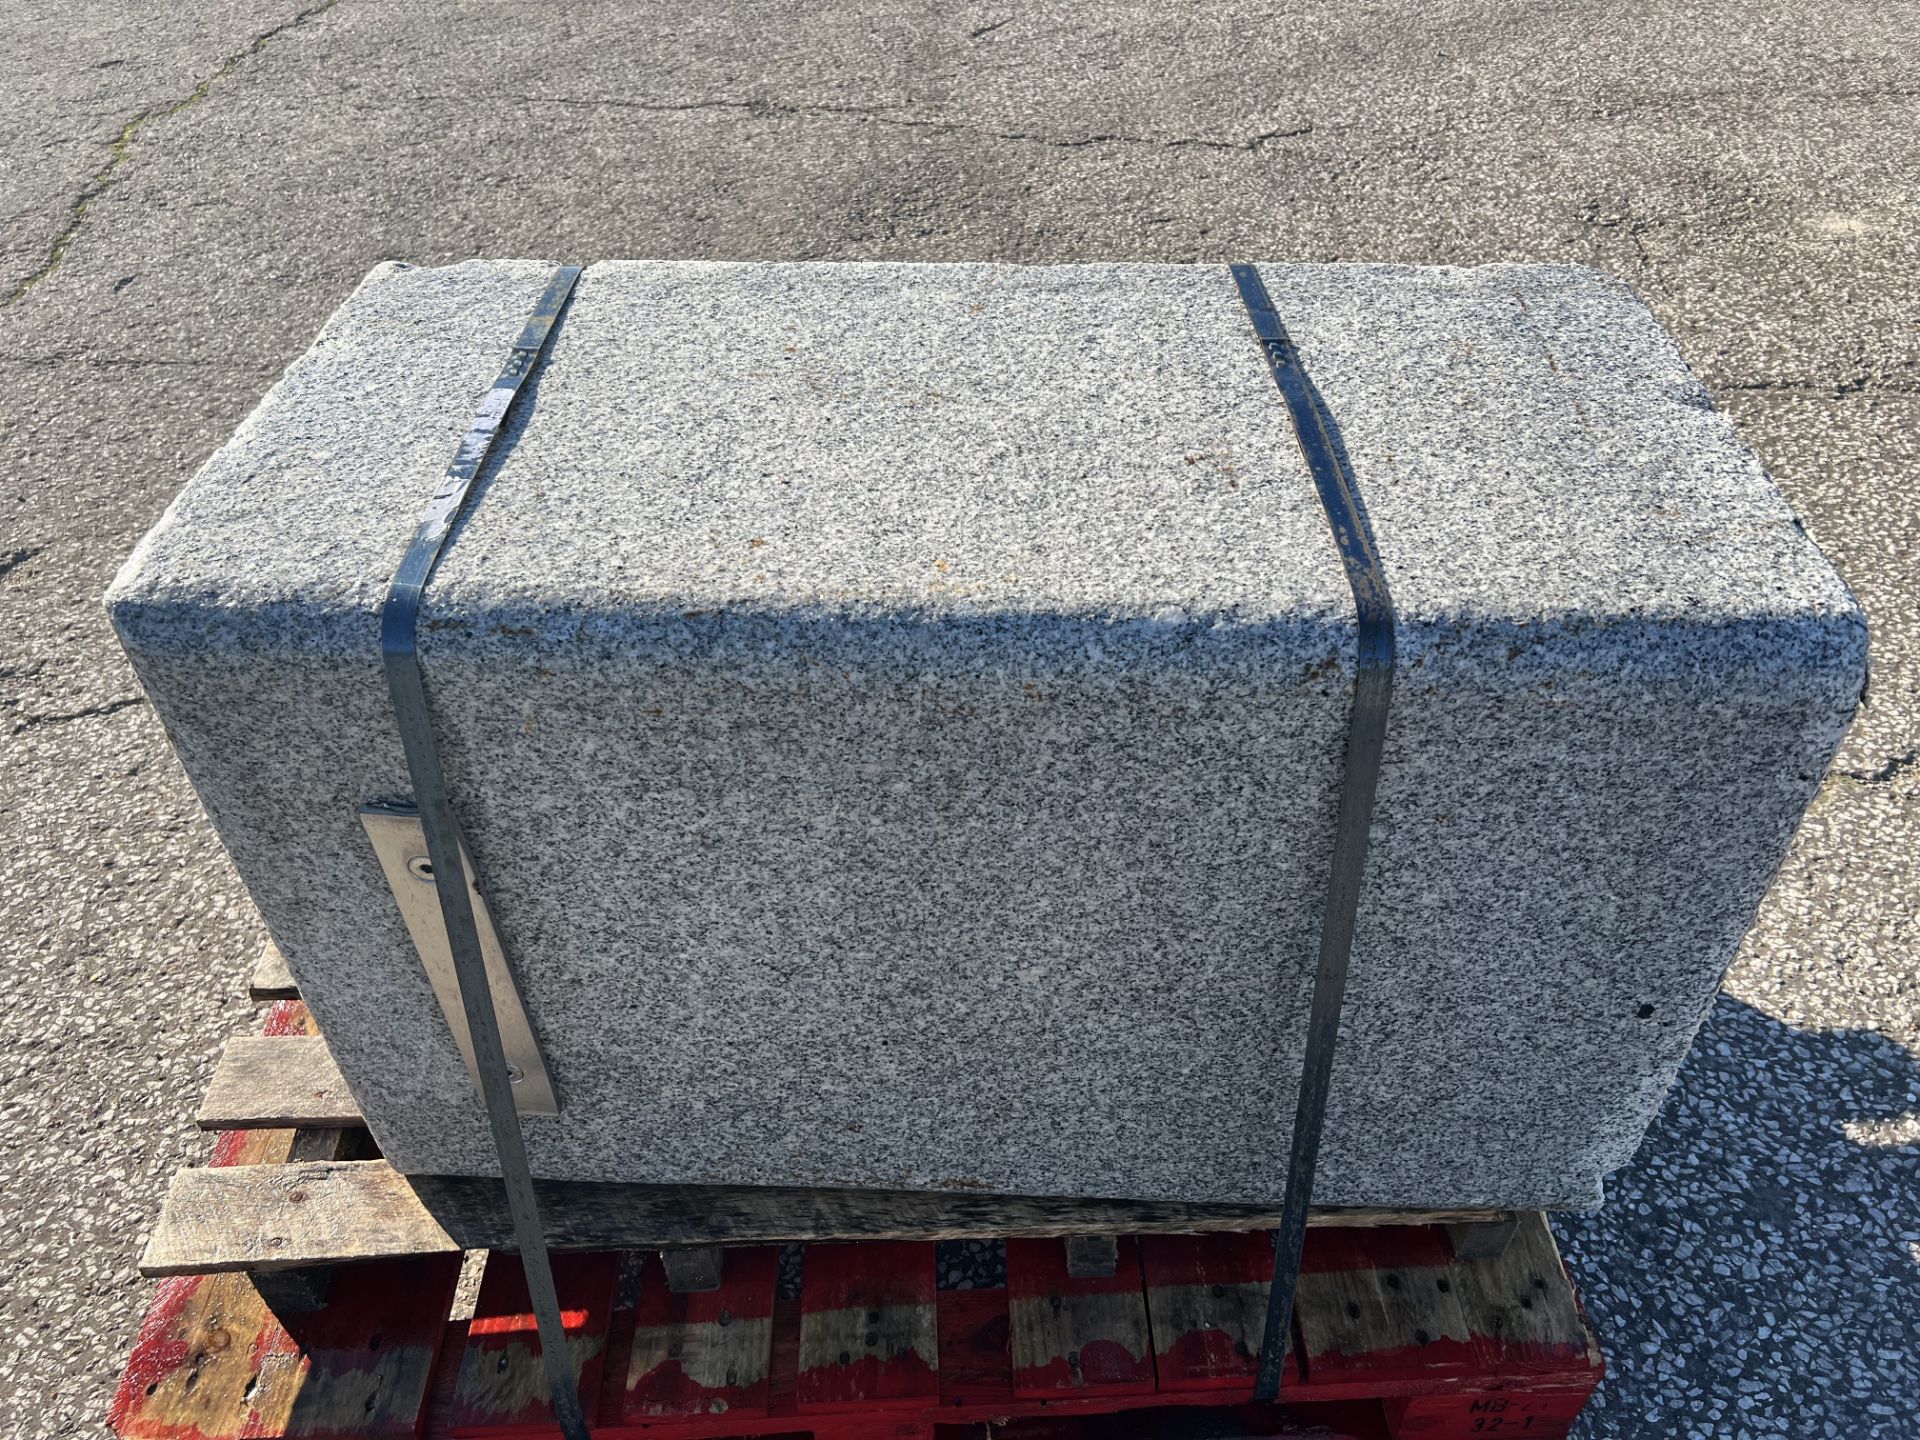 Granite Block 800Kg